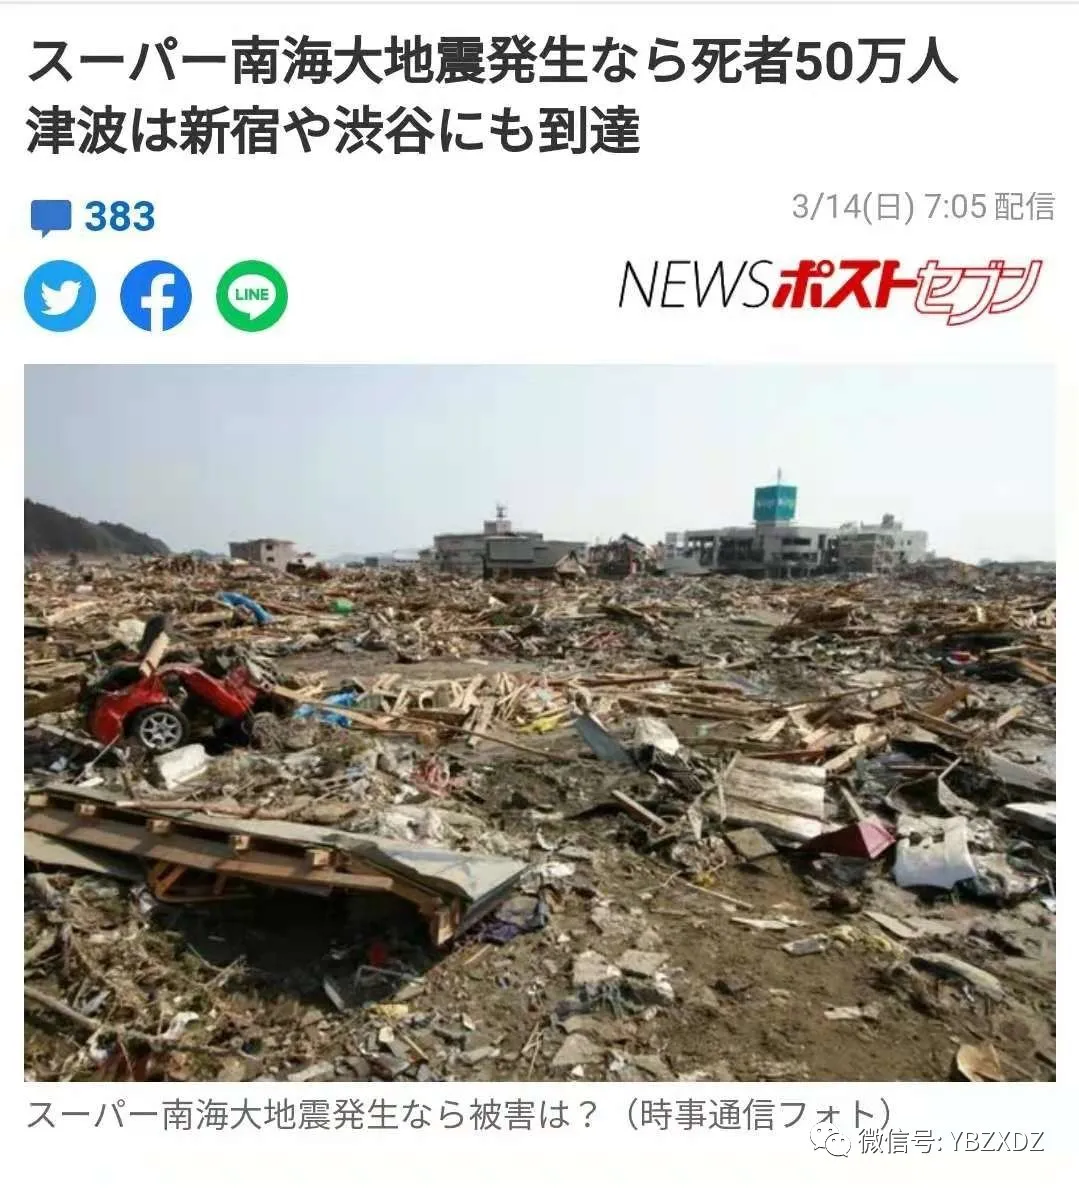 日本南海若發生大地震恐造成多達50萬人遇難 預報中心dz Mdeditor